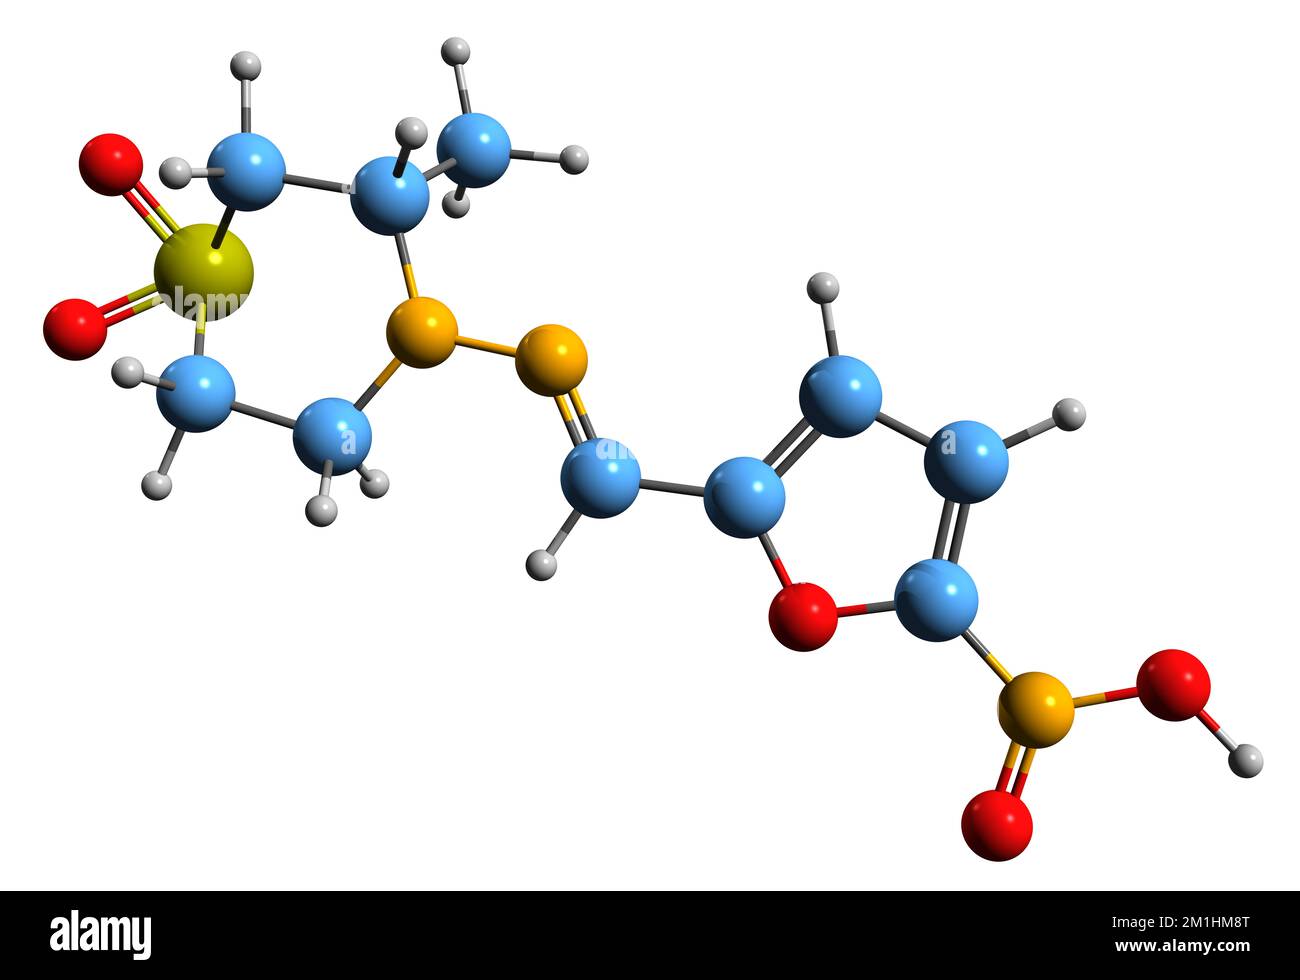 3D image de la formule du squelette nifurtimox - structure chimique moléculaire de l'antimicrobien Nitrofuranne isolé sur fond blanc Banque D'Images